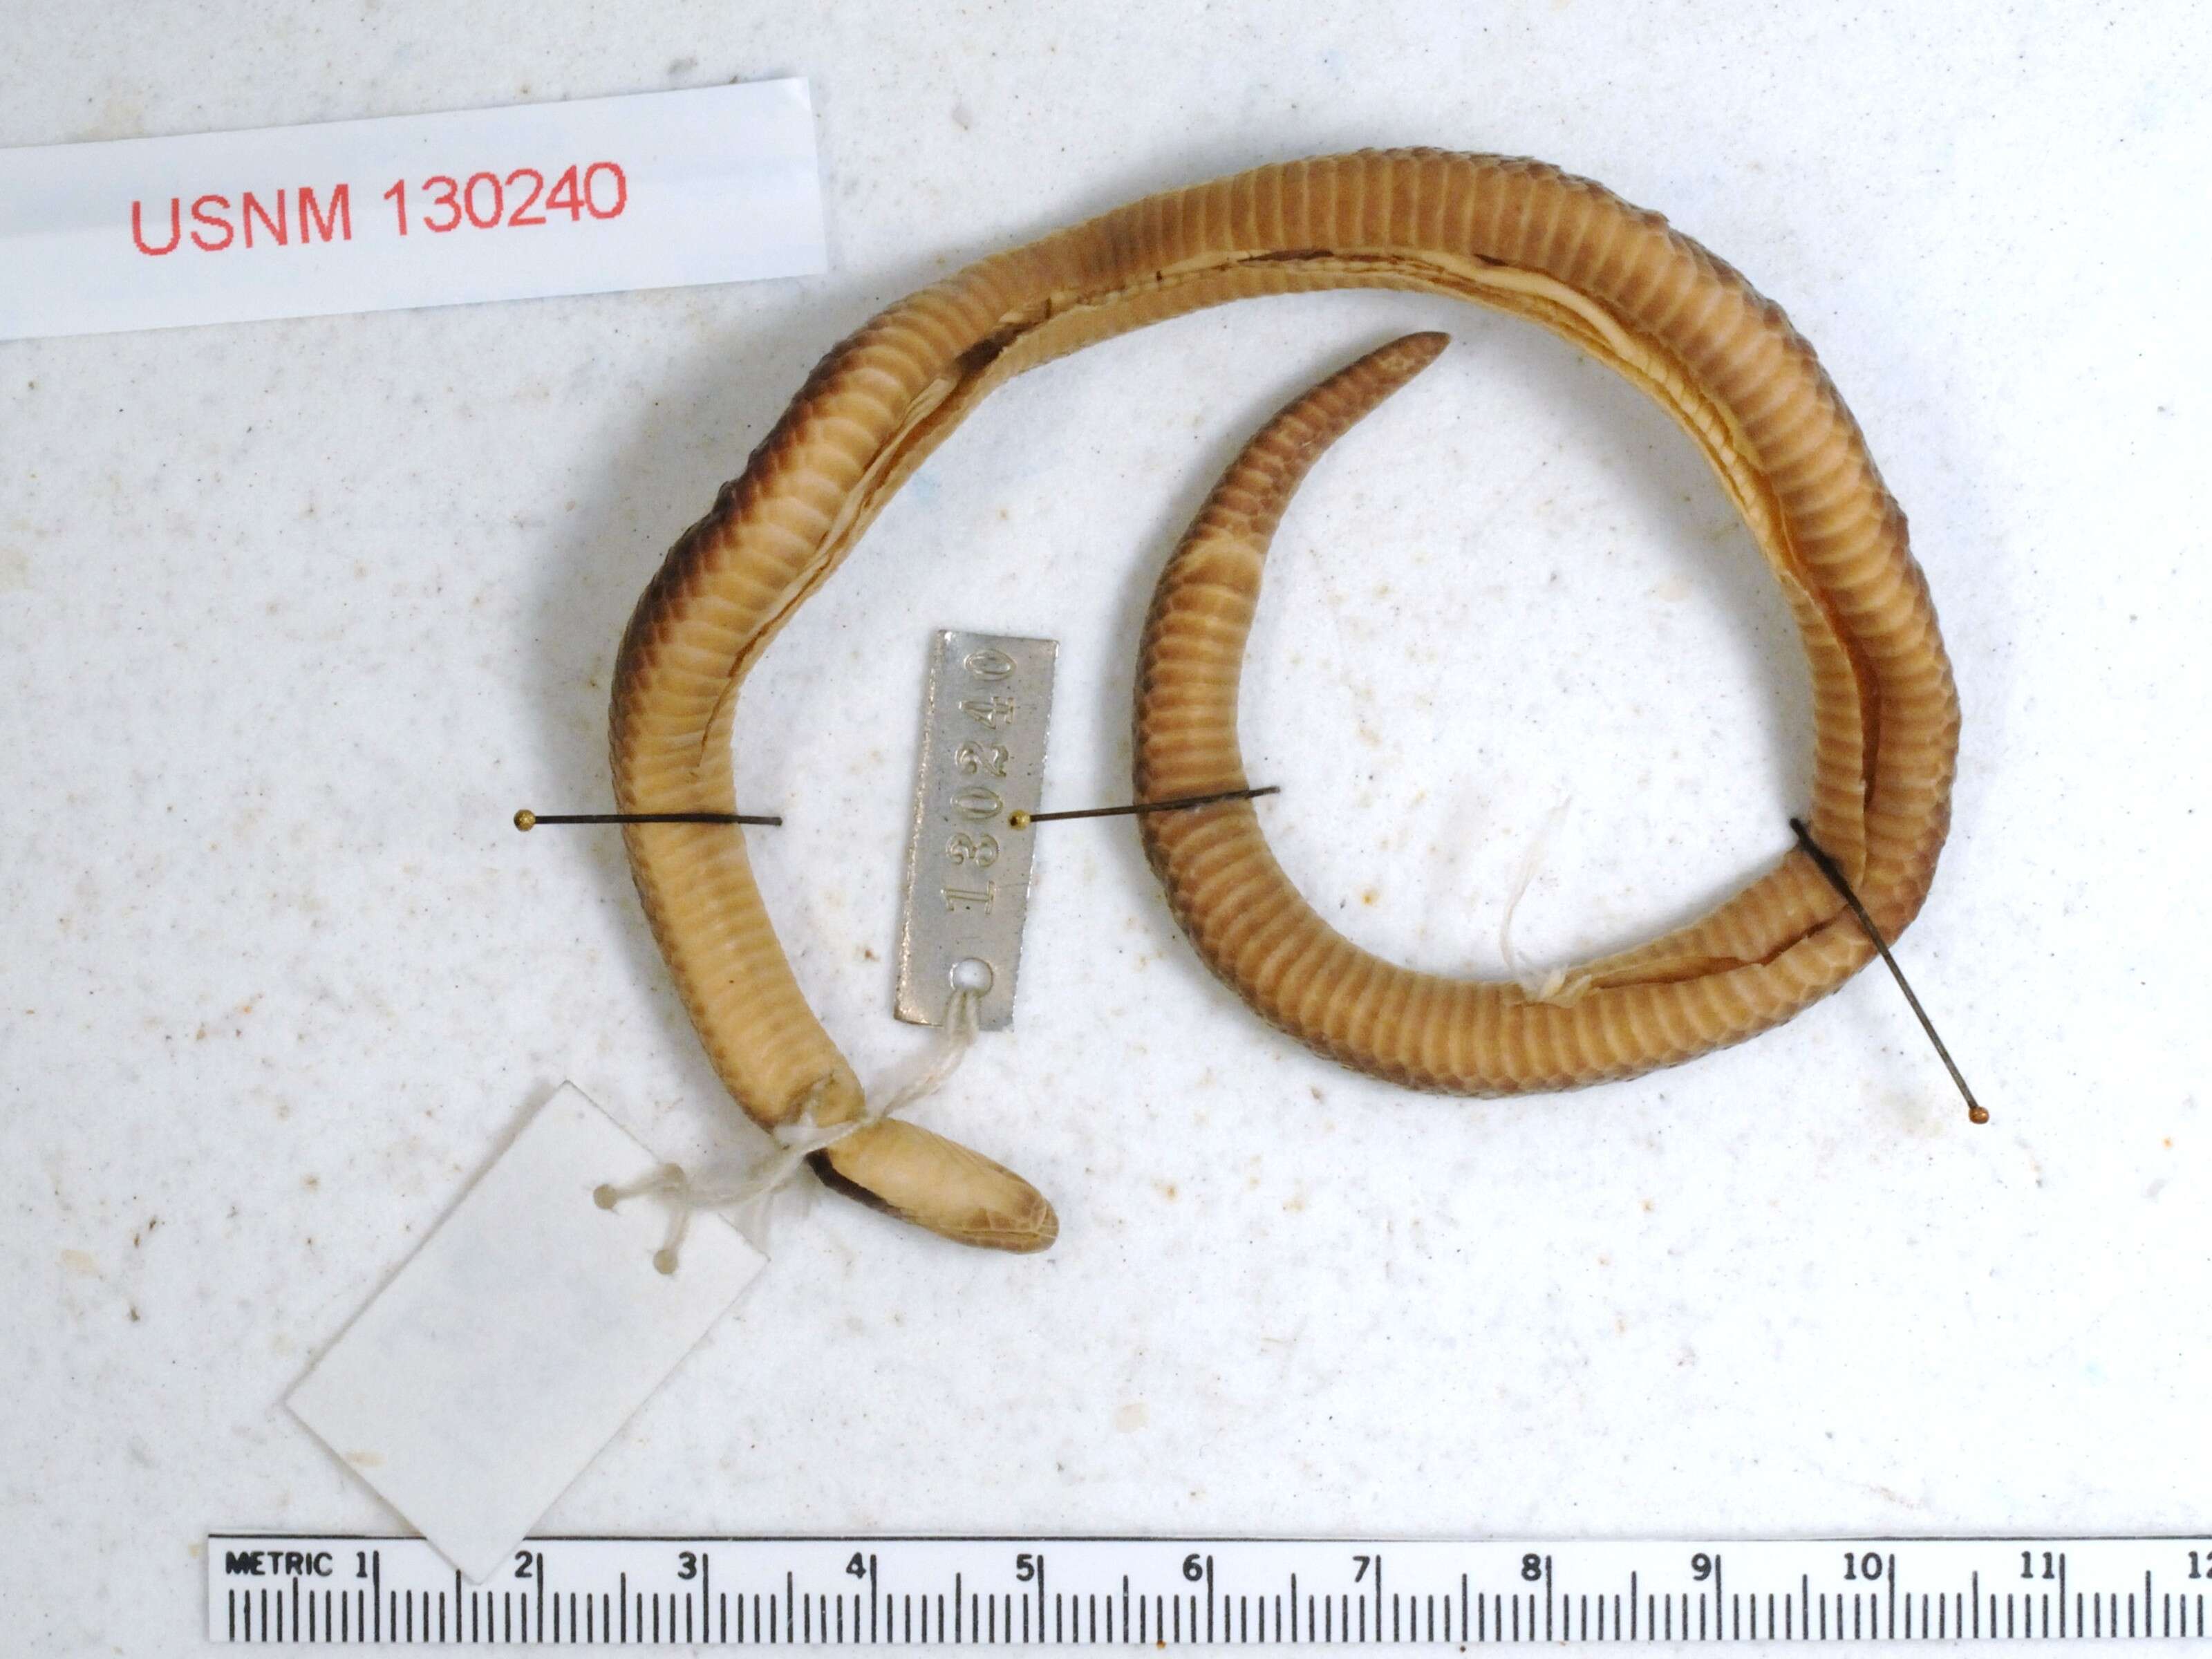 Image of Schmidt's Reed Snake